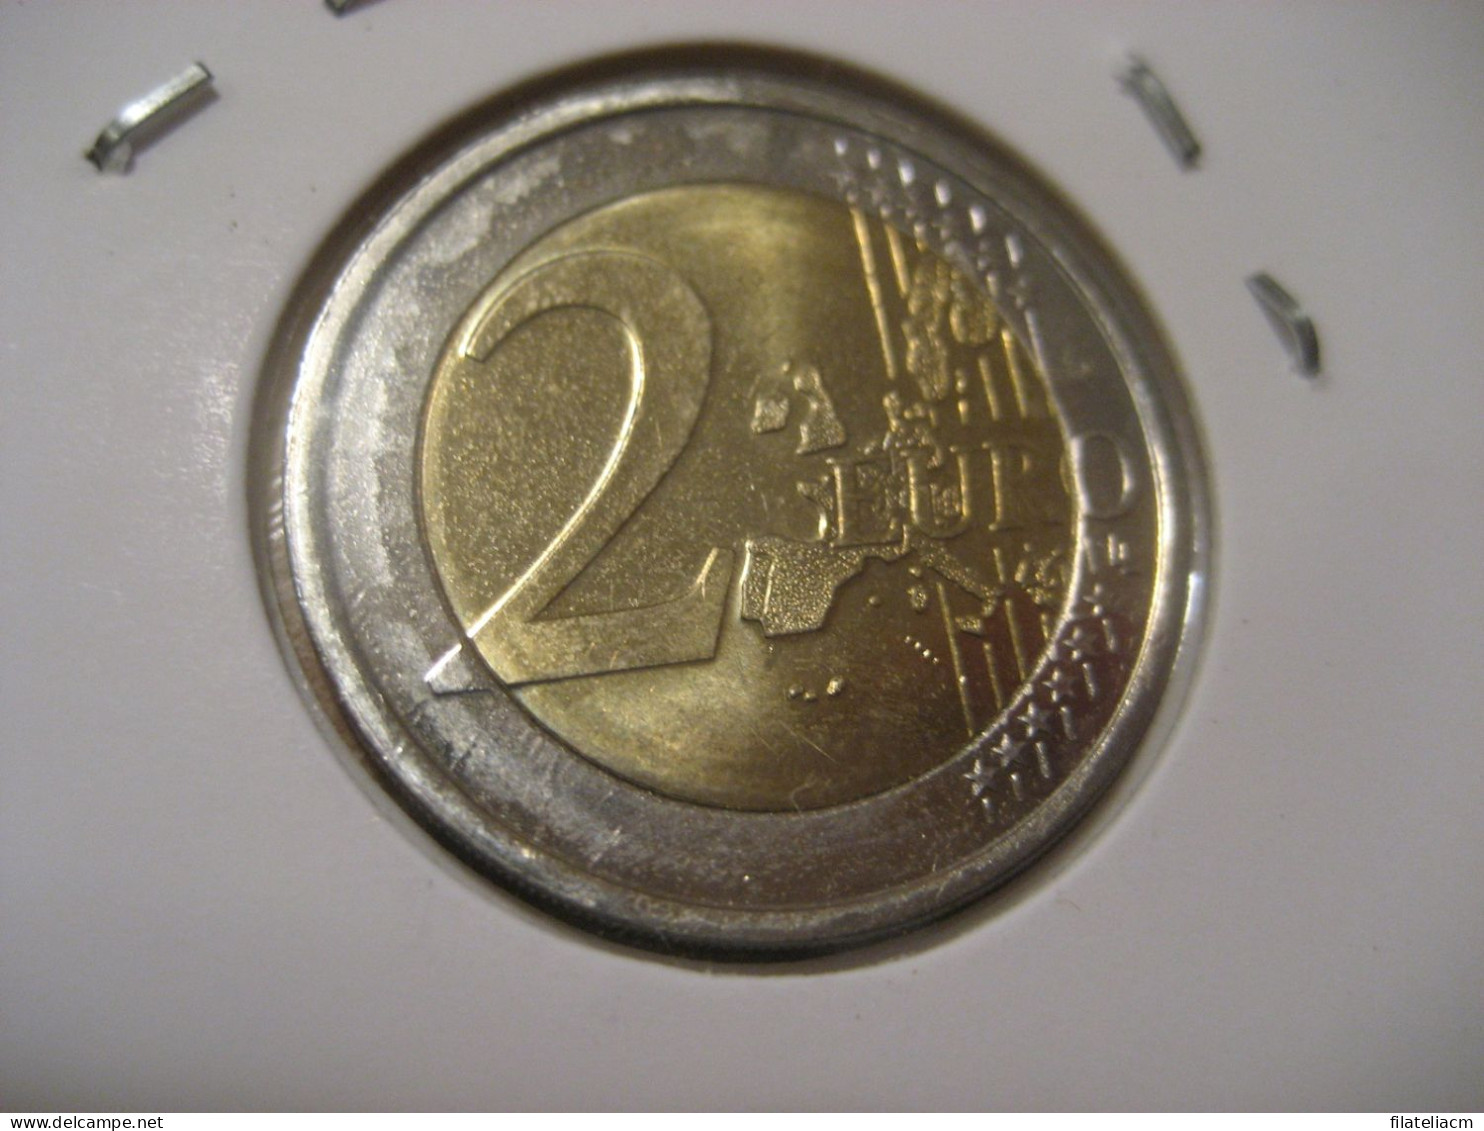 2 EURO 1999 Very Good Condition Eur Euros Coin FINLAND Finlande Finlandia - Finlande